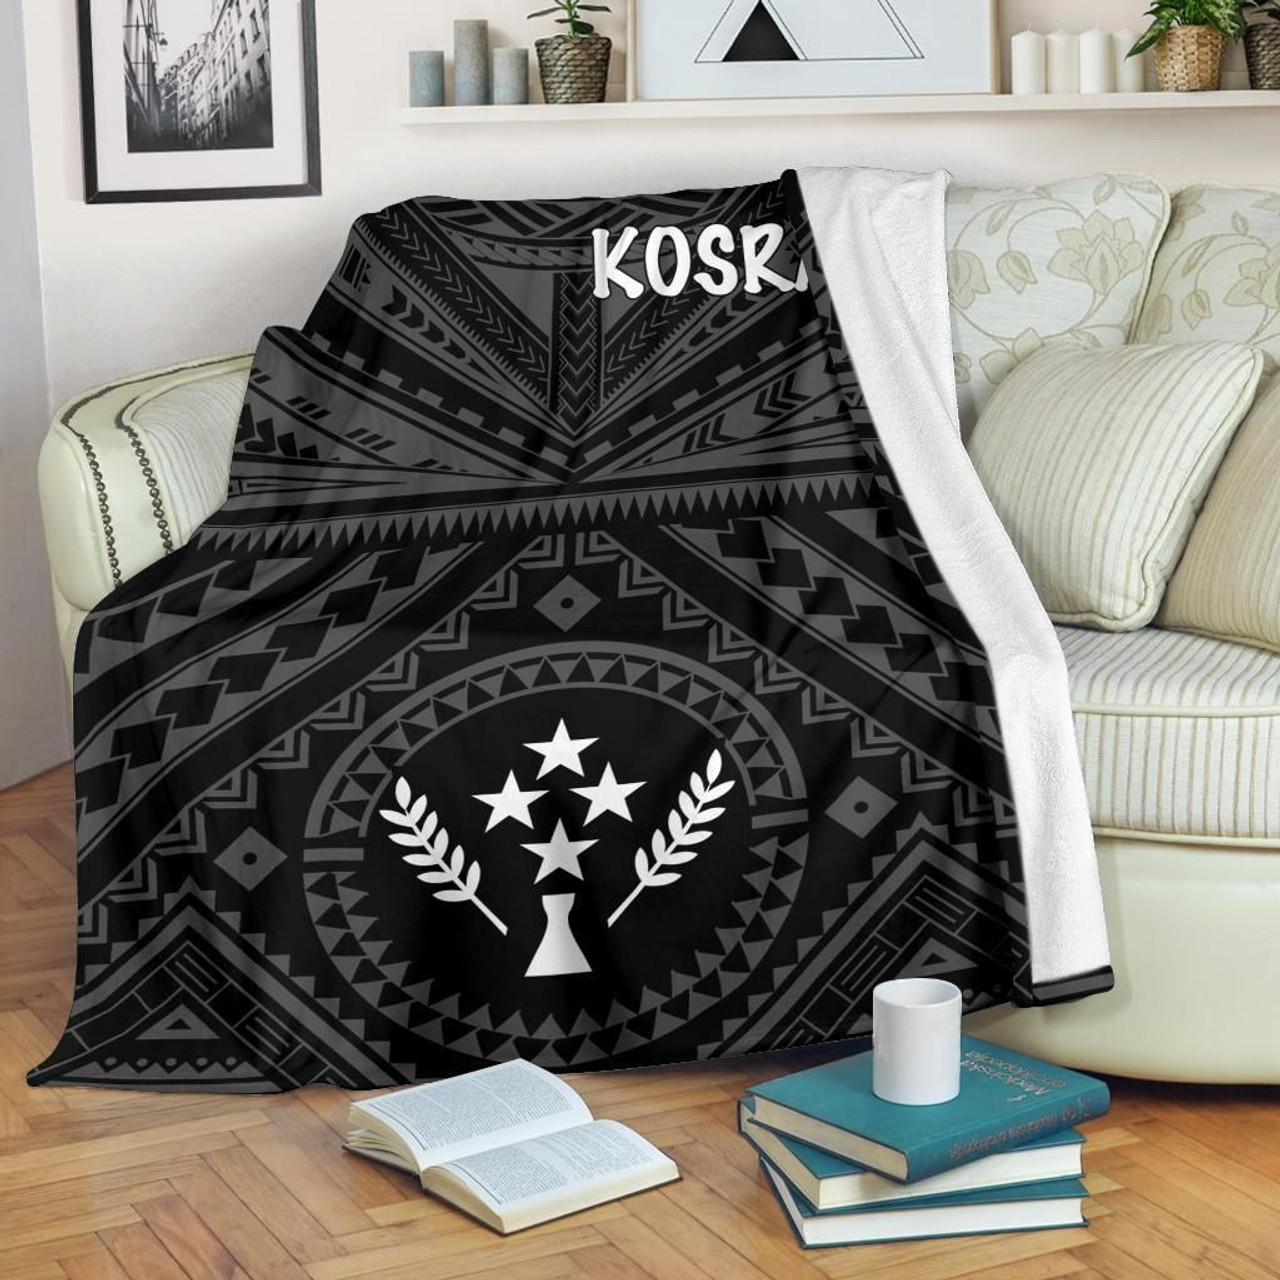 Kosrae Premium Blanket - Kosrae Flag In Polynesian Tattoo Style (Black) 3